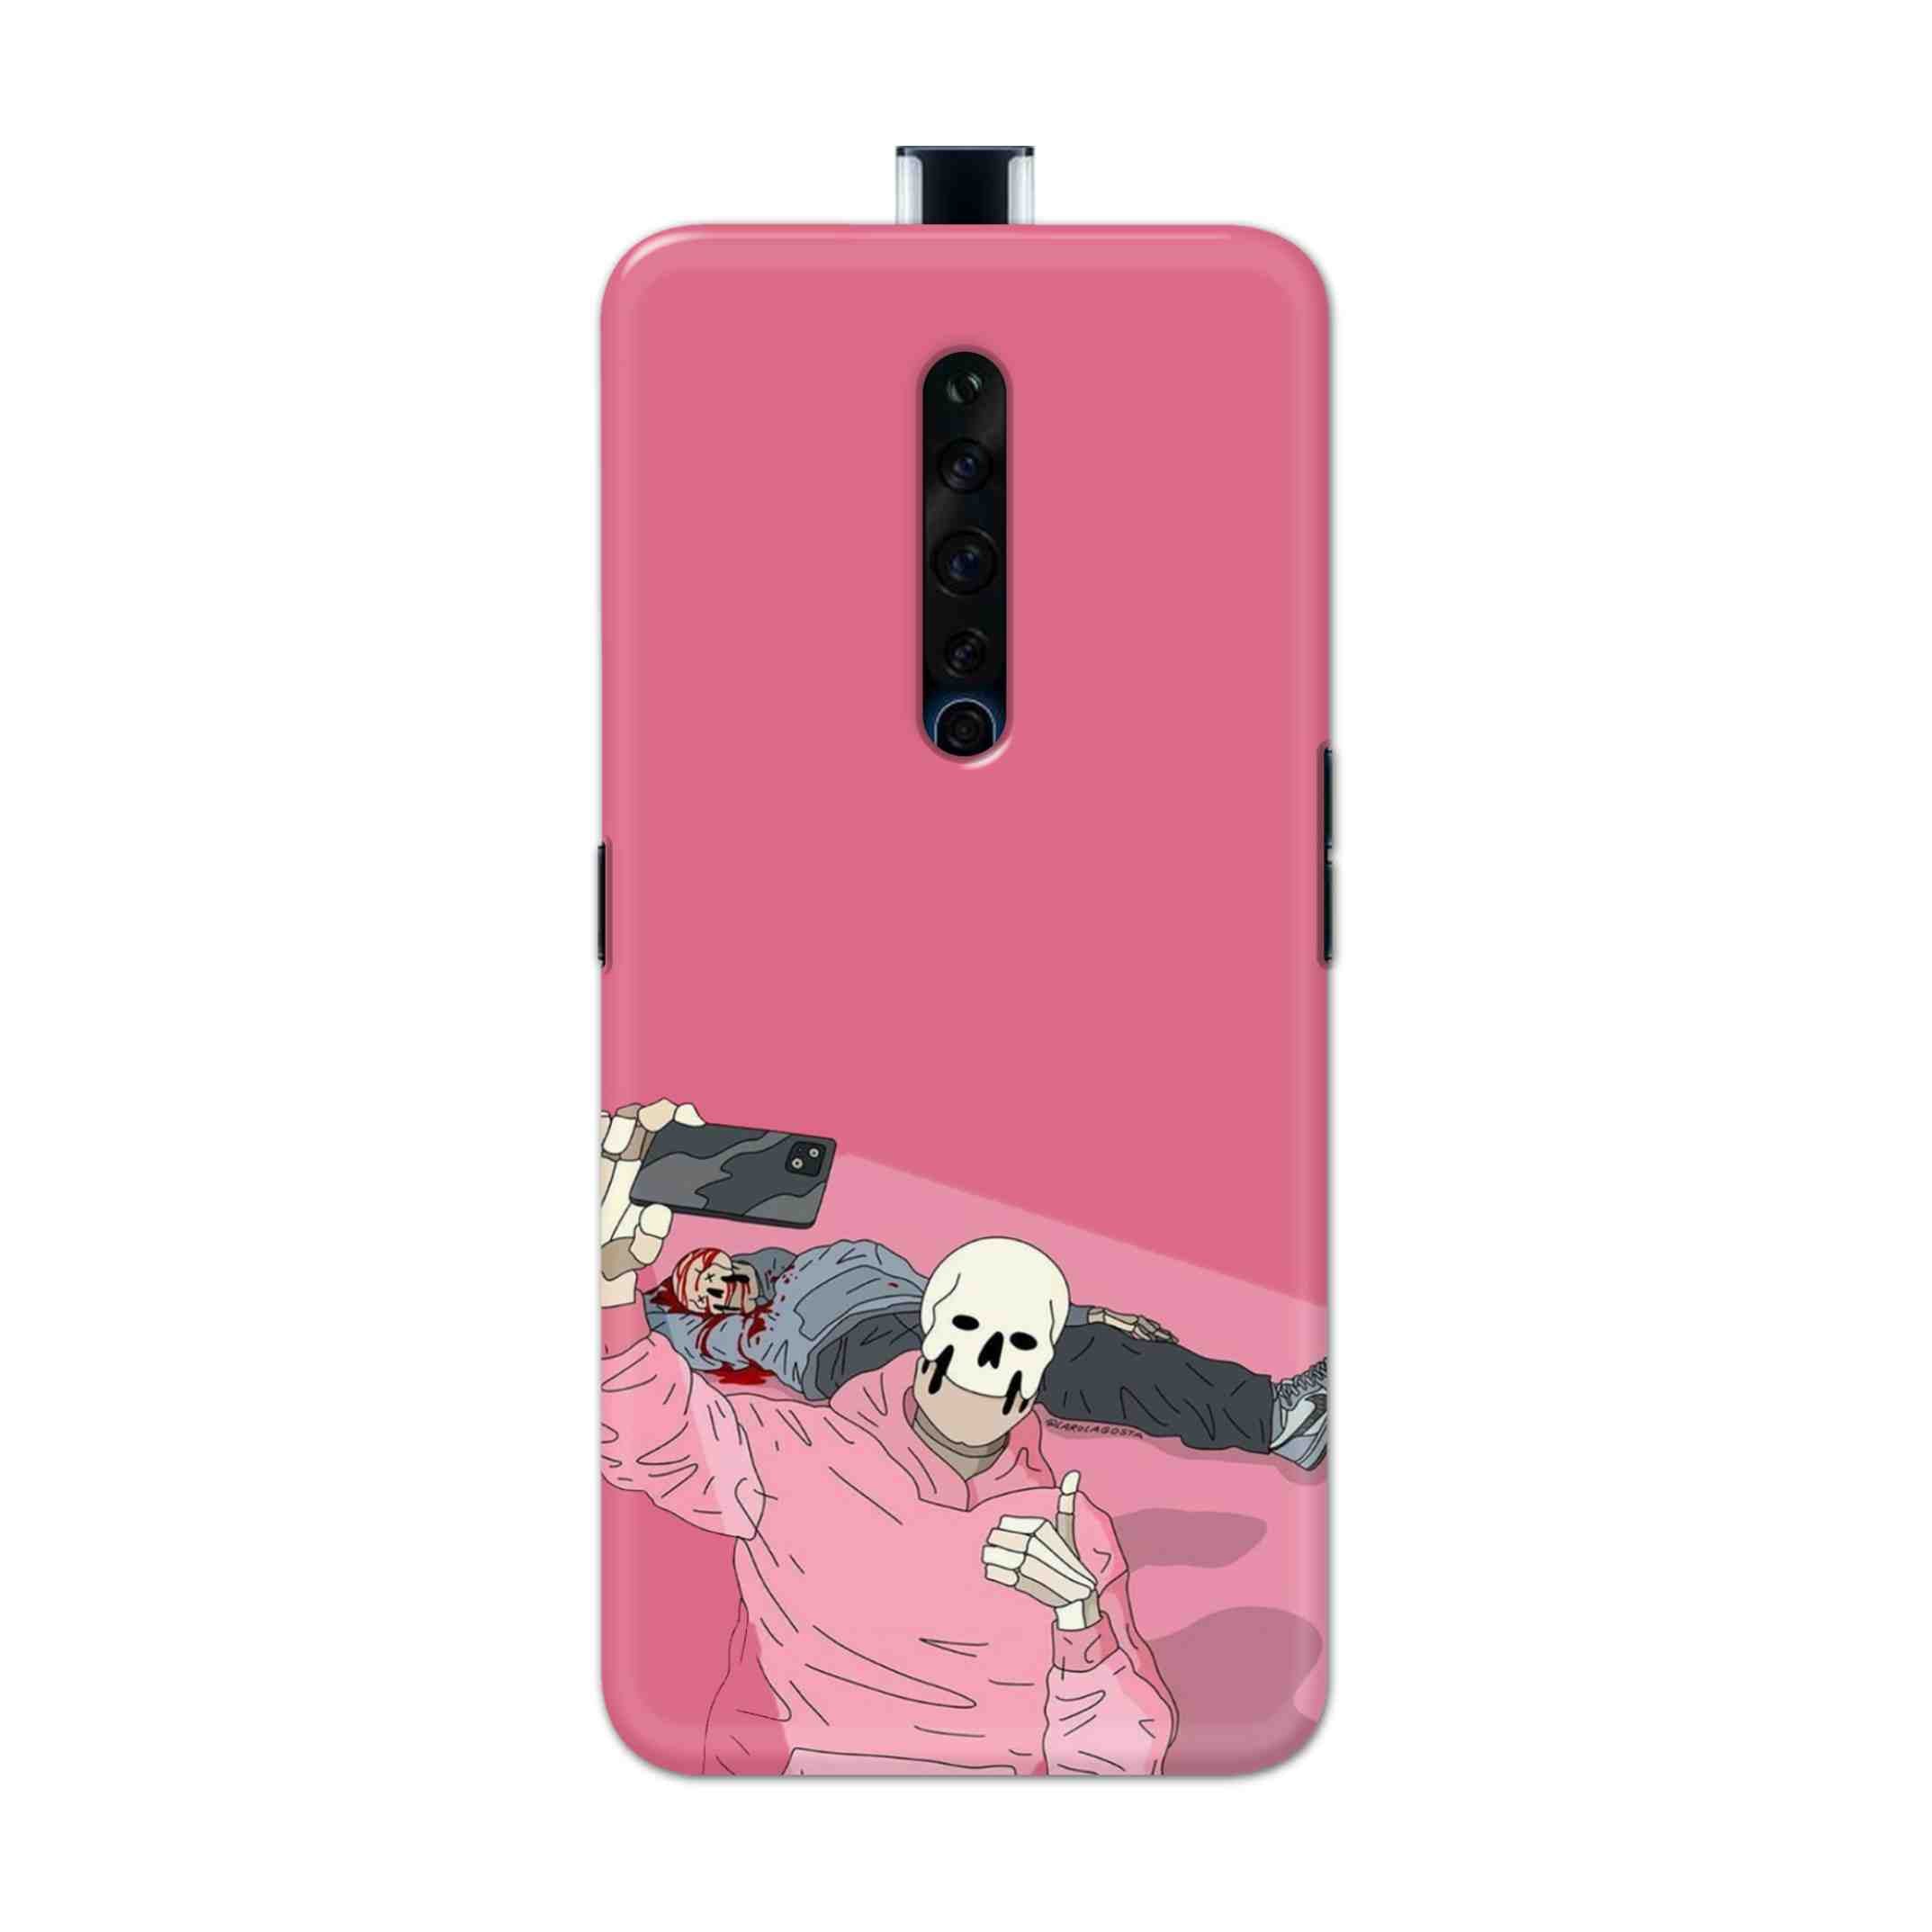 Buy Selfie Hard Back Mobile Phone Case Cover For Oppo Reno 2Z Online